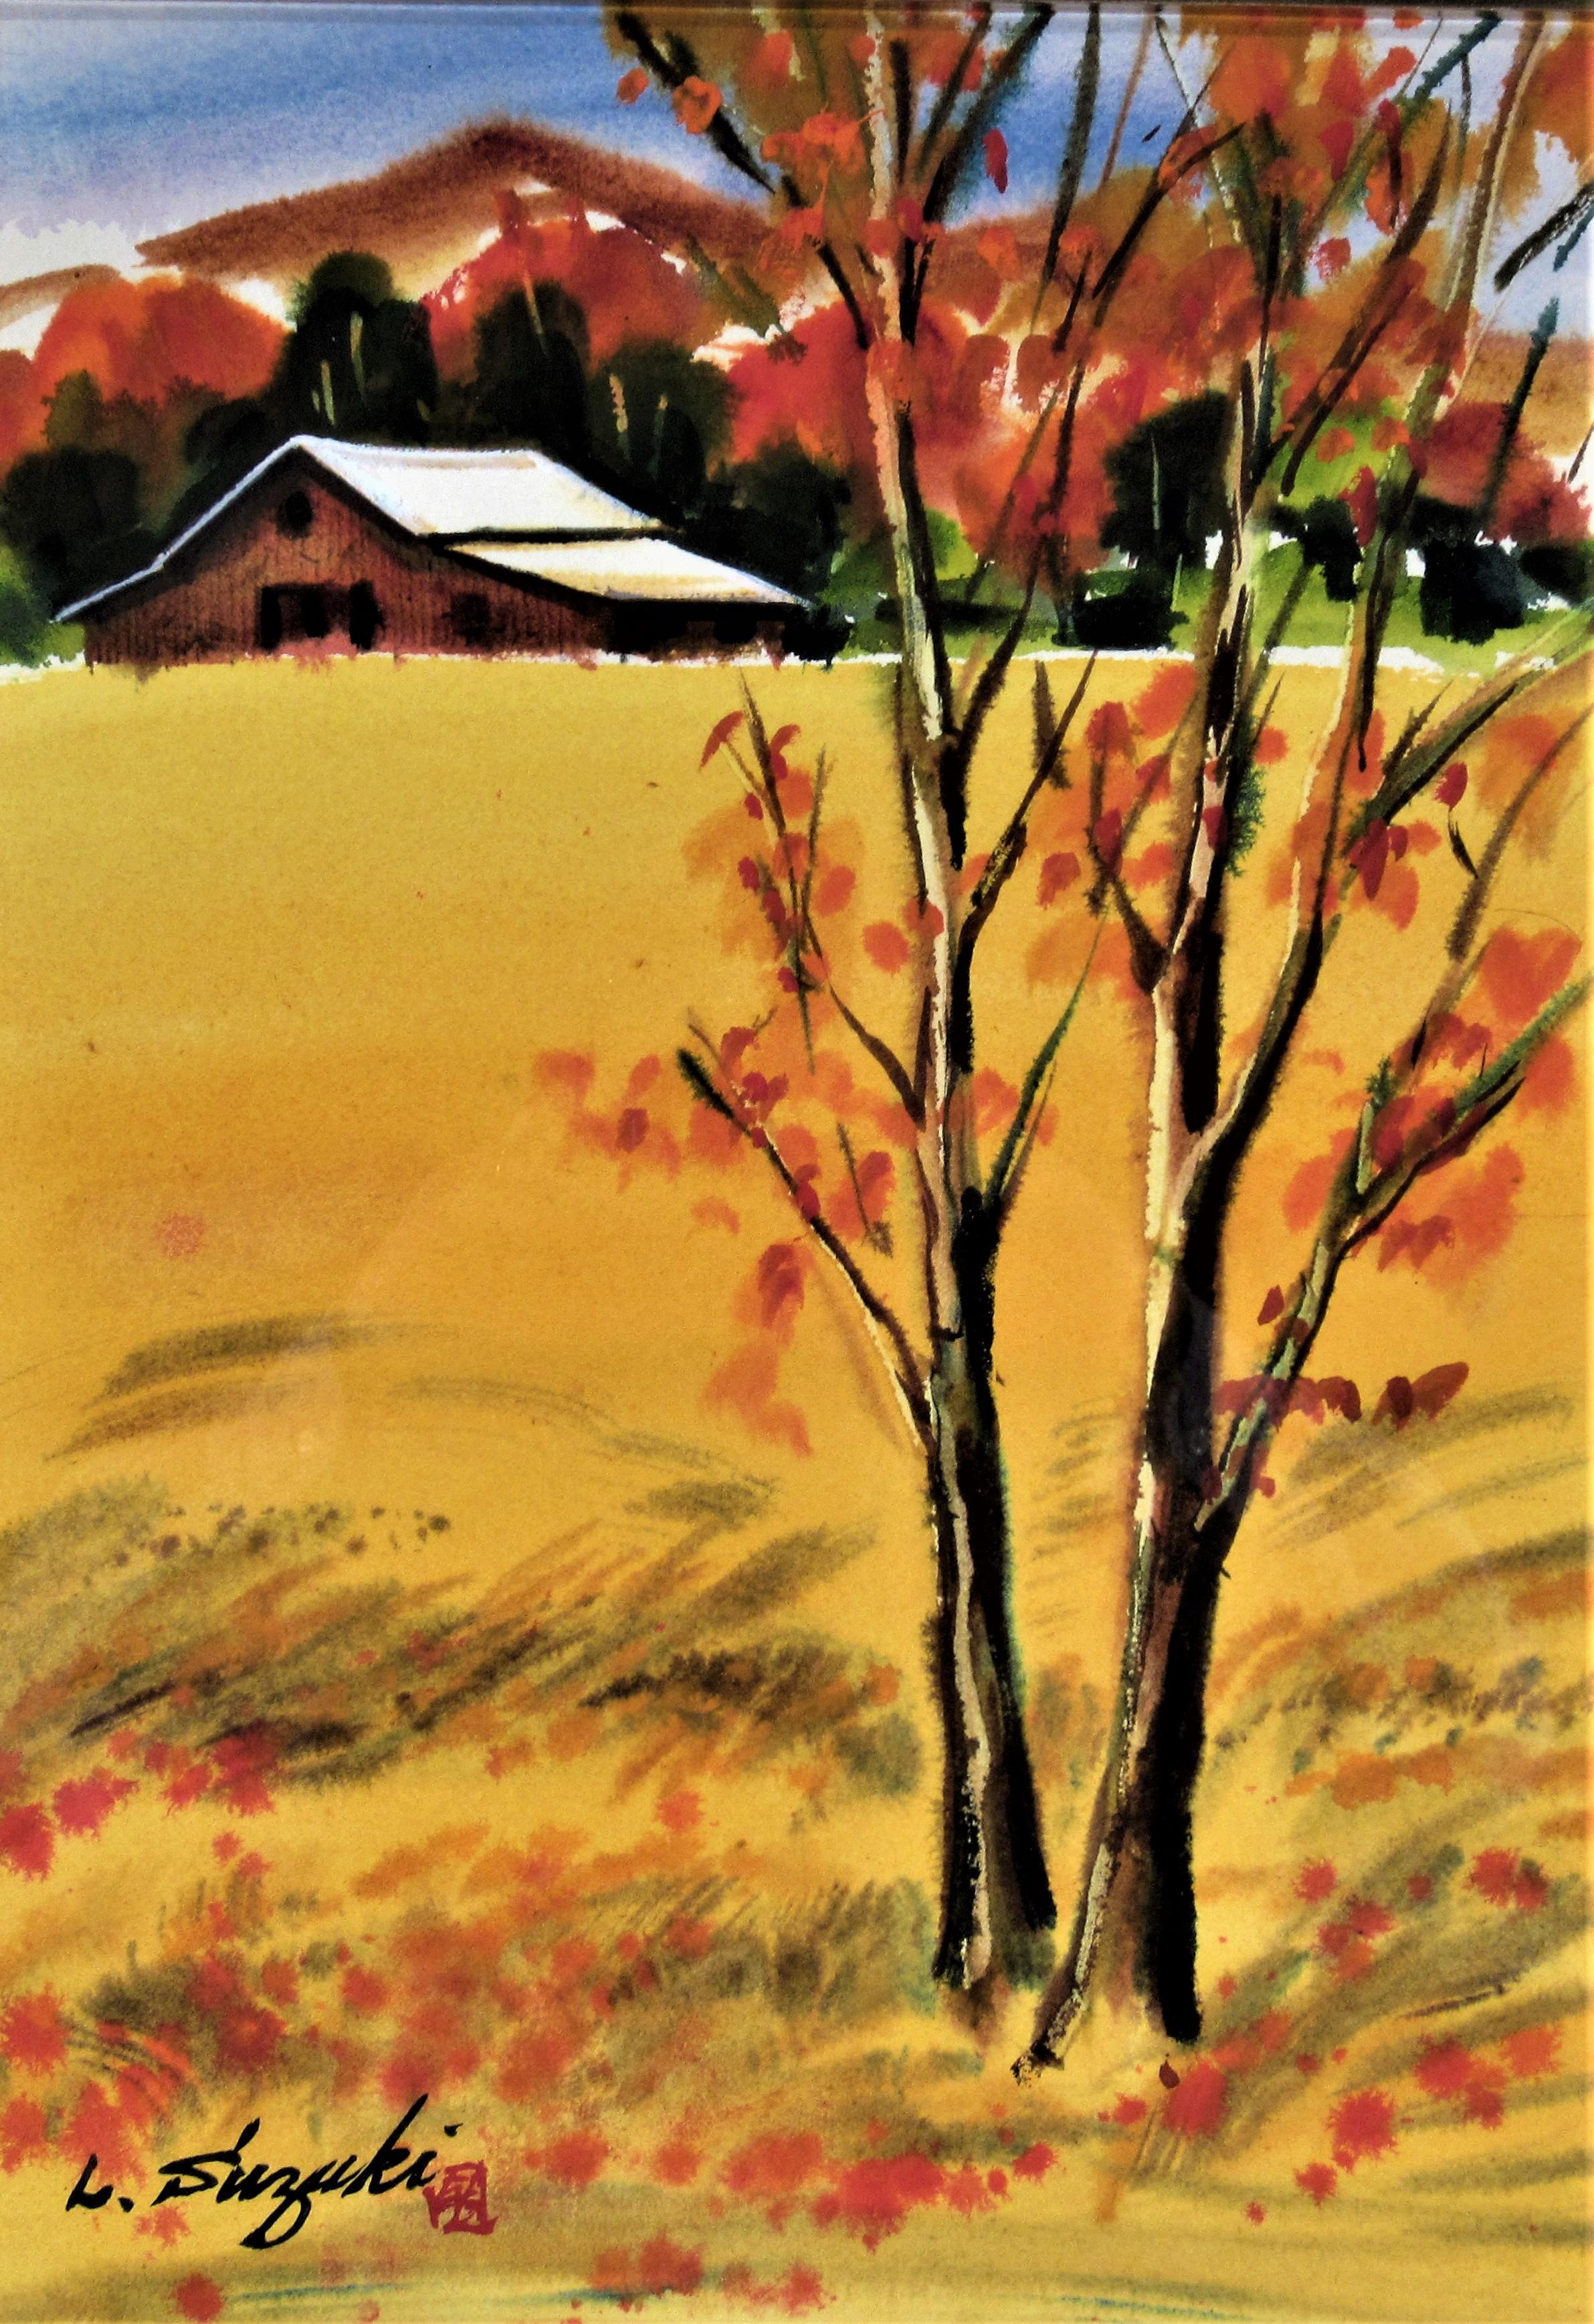 Landscape with Barn - Art by Lewis Suzuki